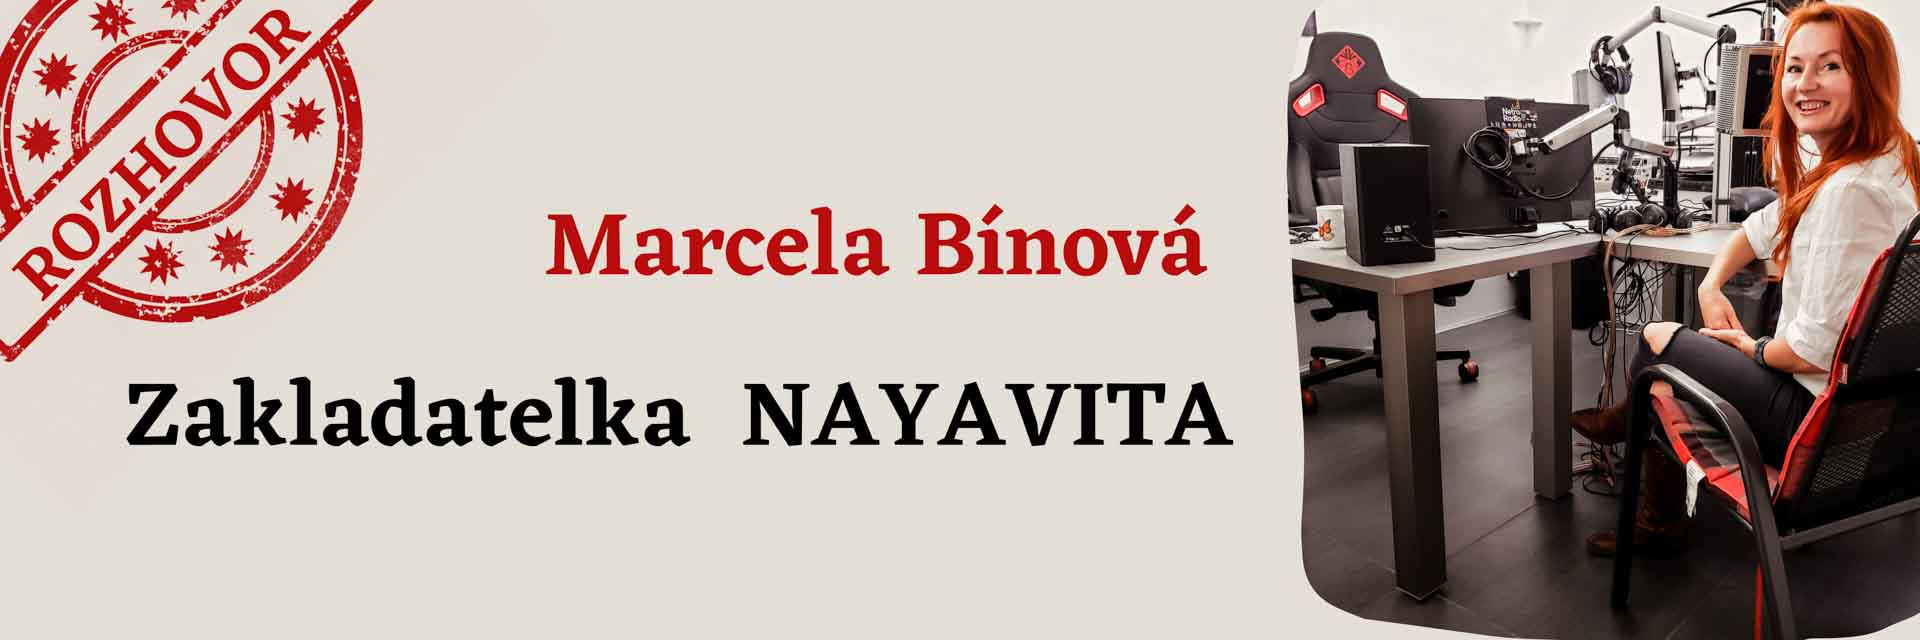 Rozhovor s NAYAVITA zakladatelkou Marcela Bínová pro Netro Rádio